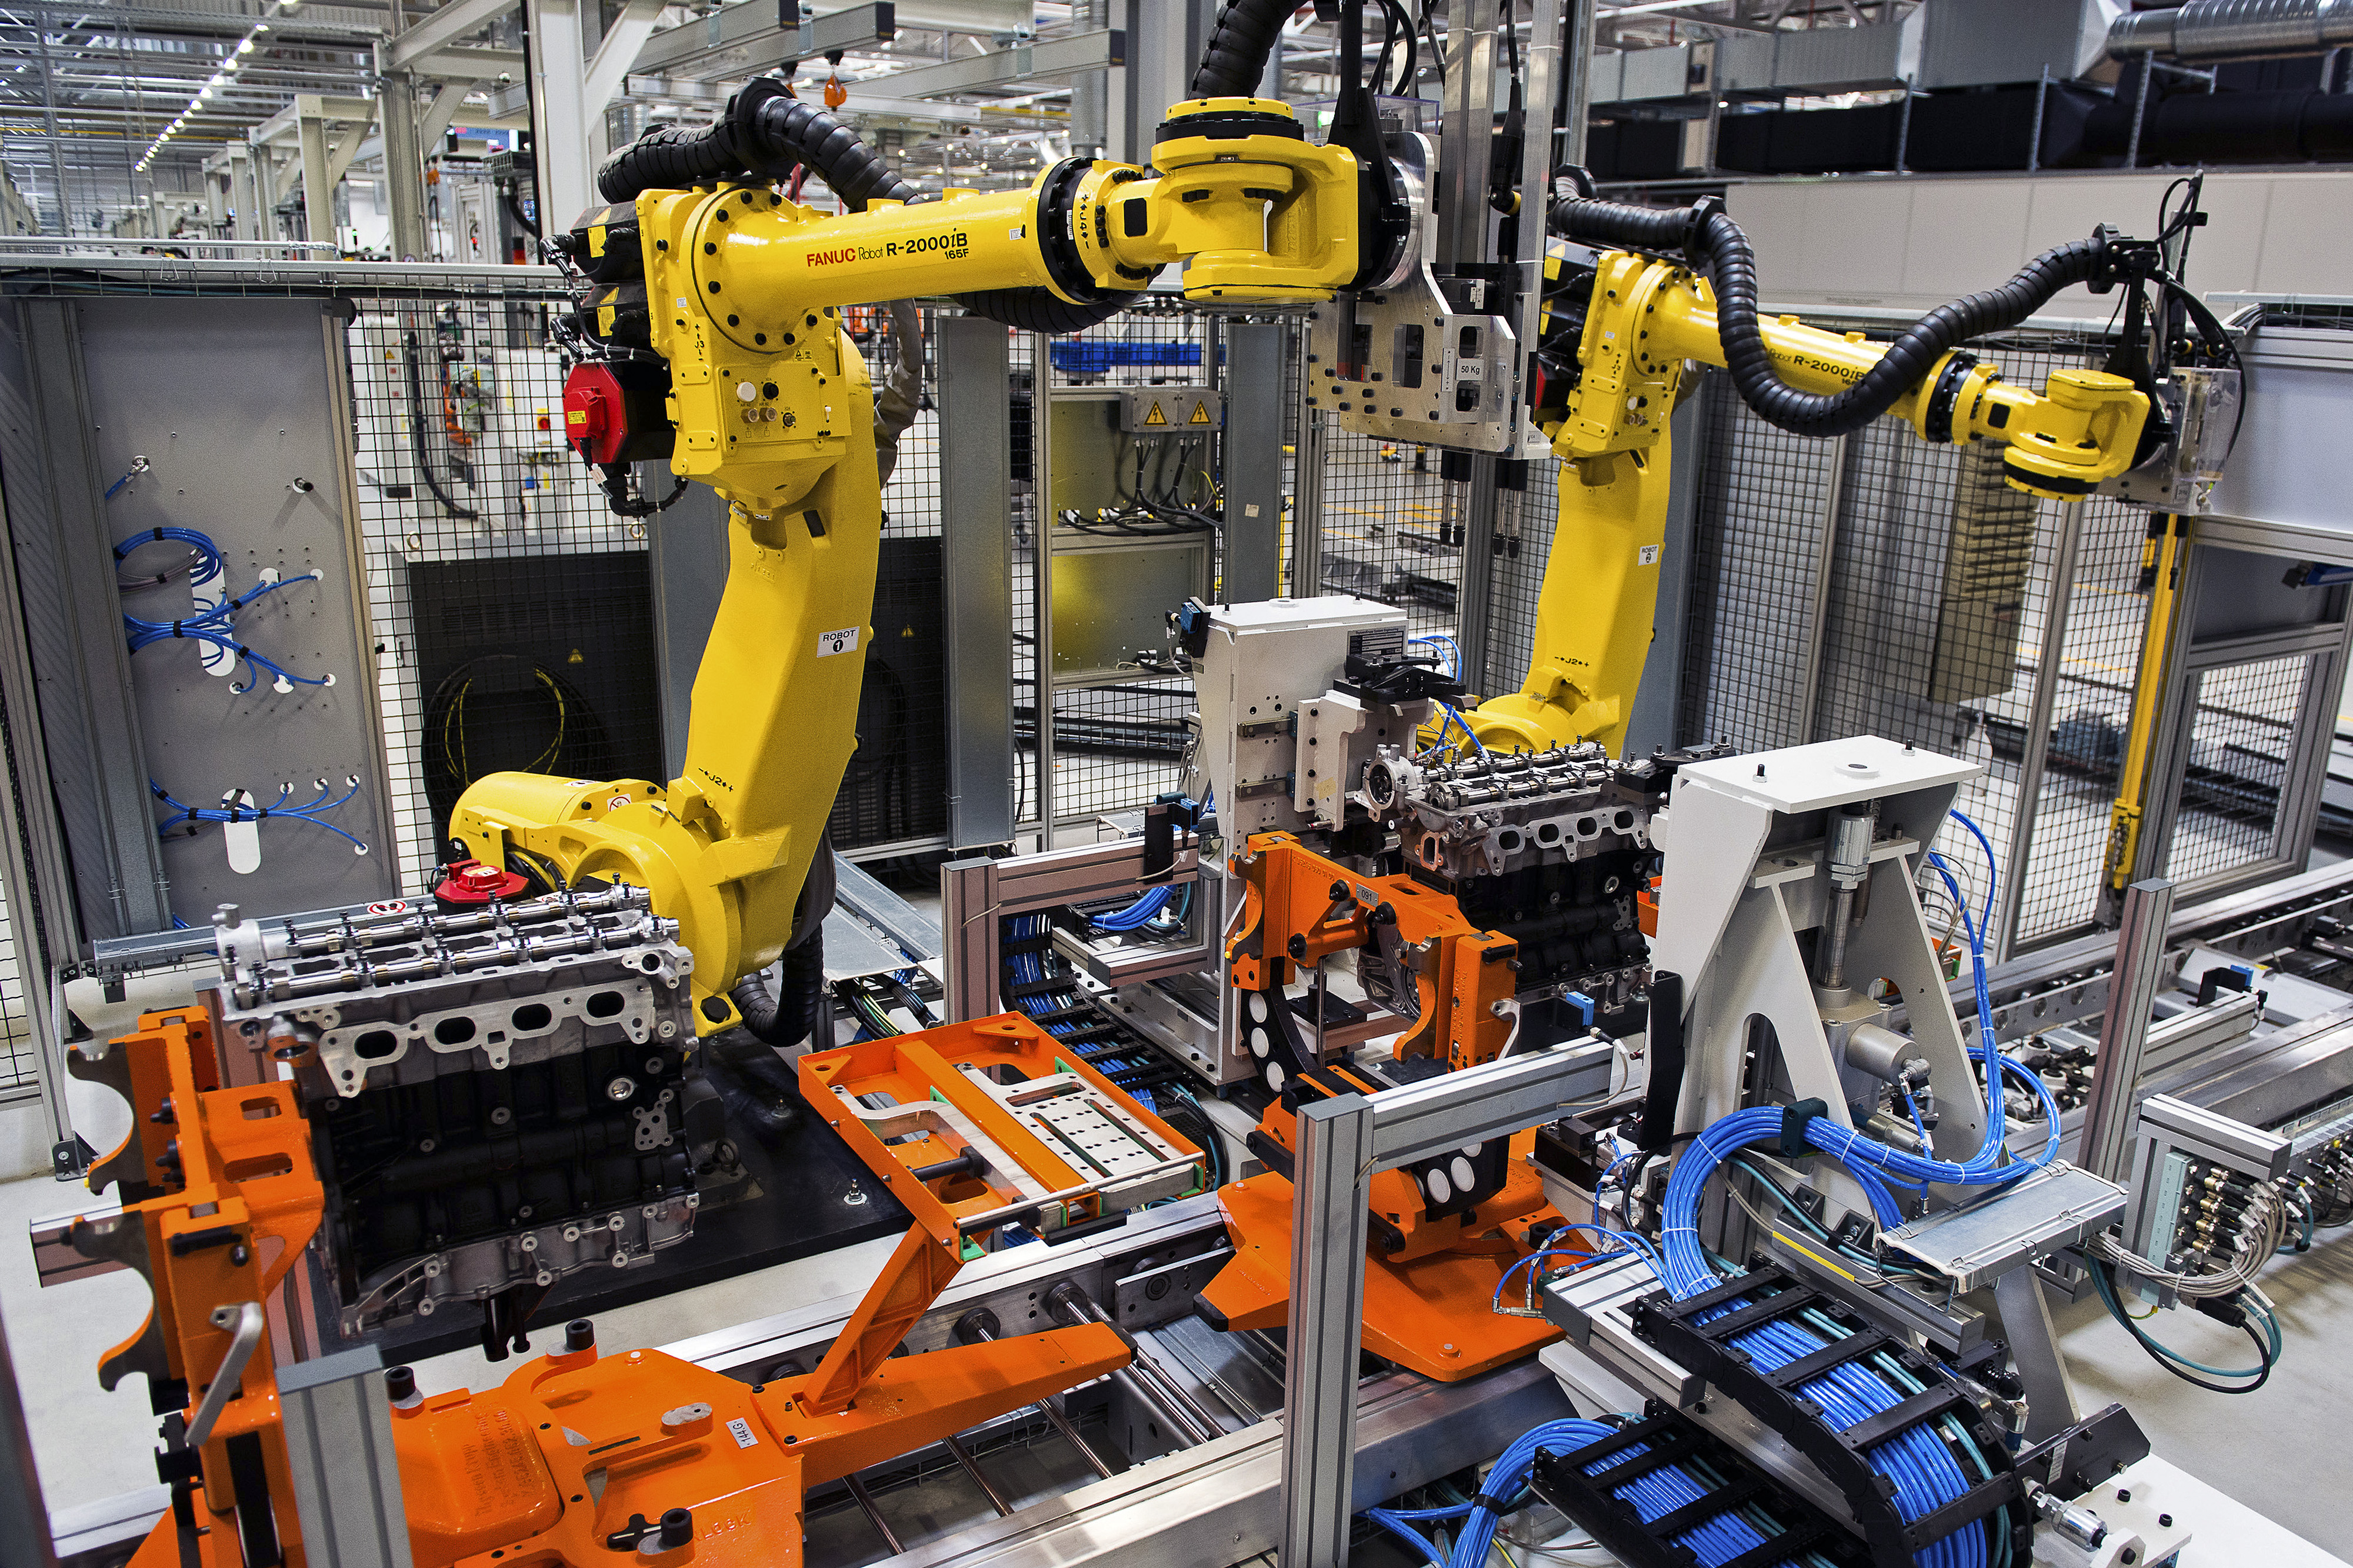 Automation technology. Роботы фирмы Fanuc. Роботизированный Технологический комплекс РТК. Fanuc производители роботов. Механизация и автоматизация производства.